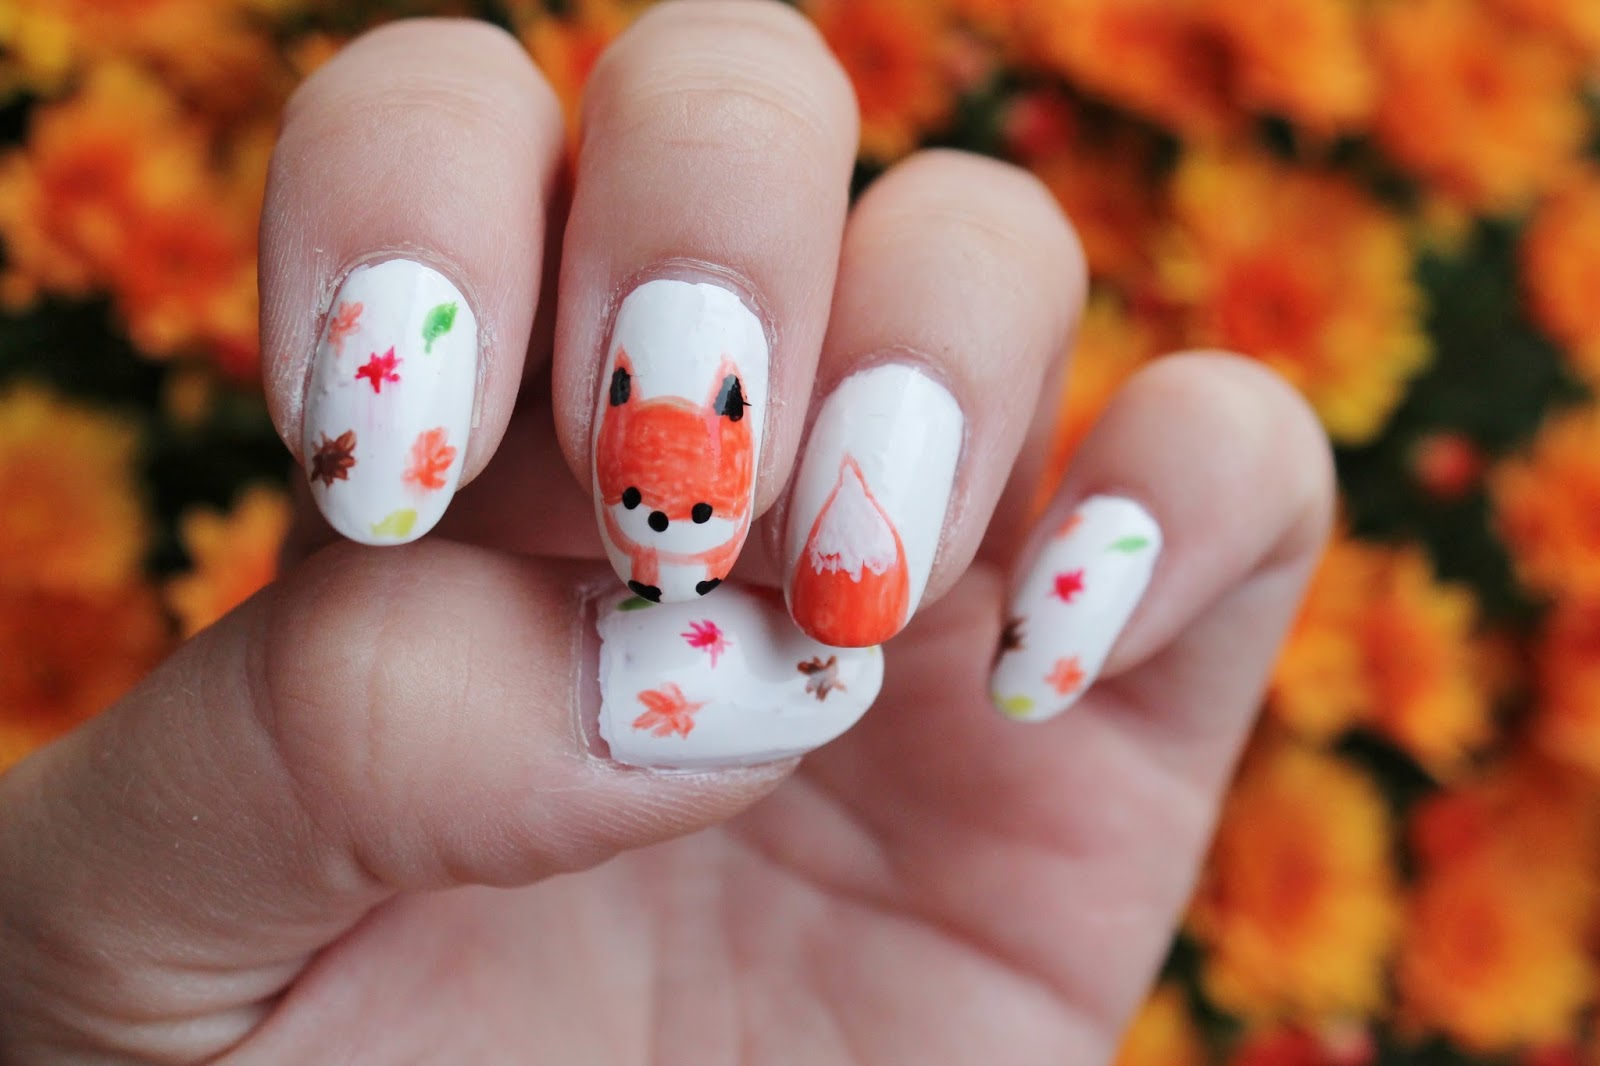 2. Cute Fox and Deer Nail Designs - wide 9